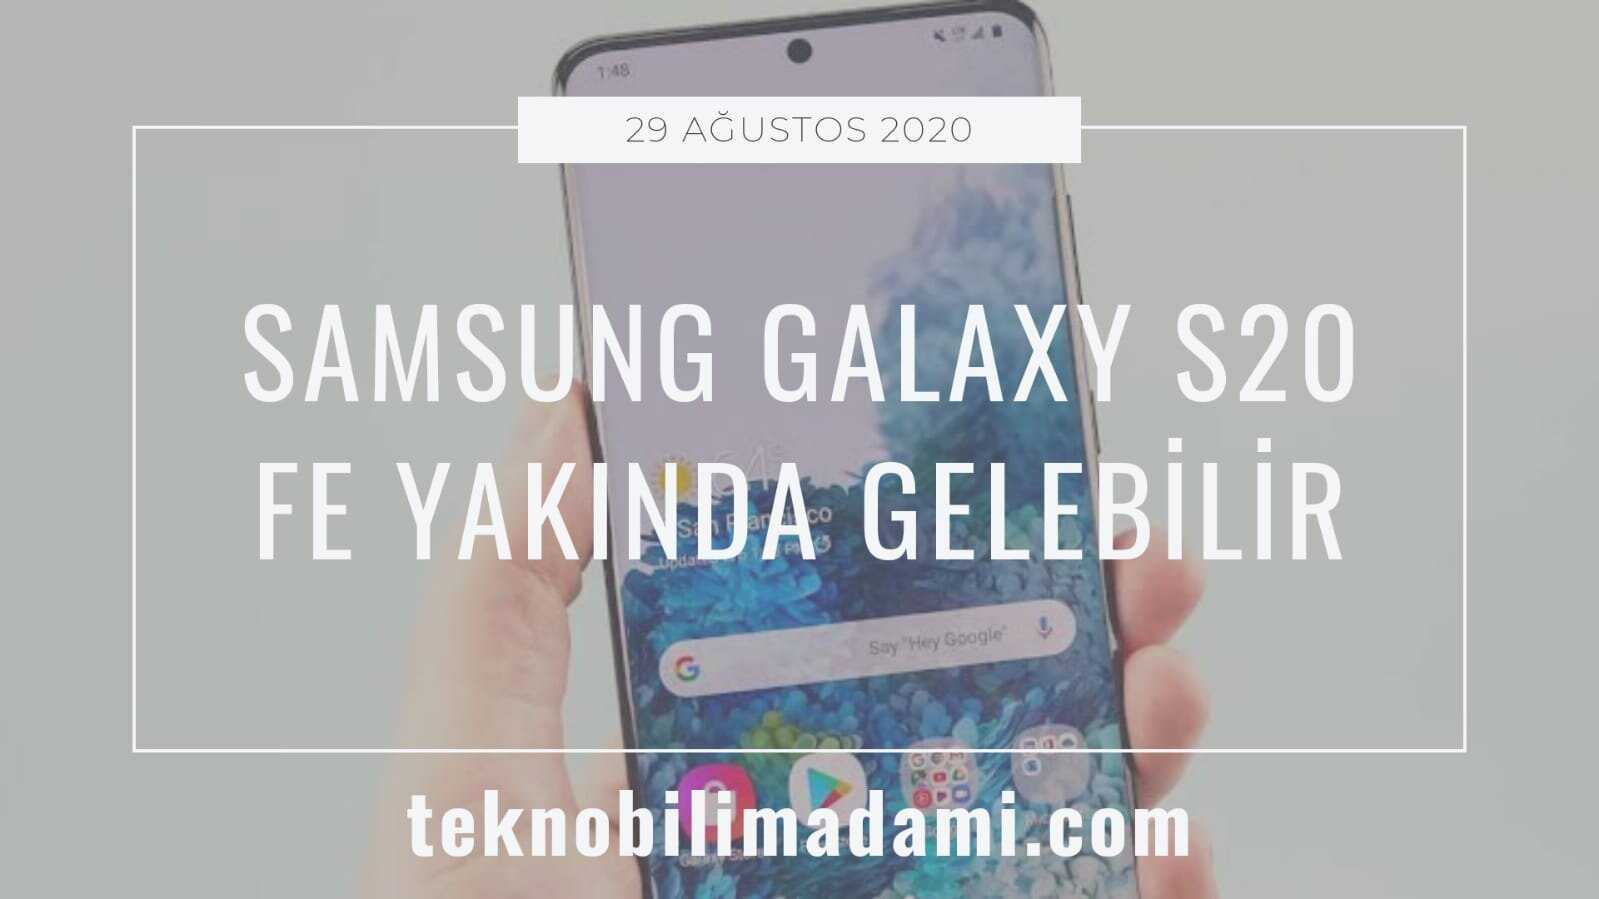 Samsung показала galaxy s20 fe — смартфон за нормальные деньги